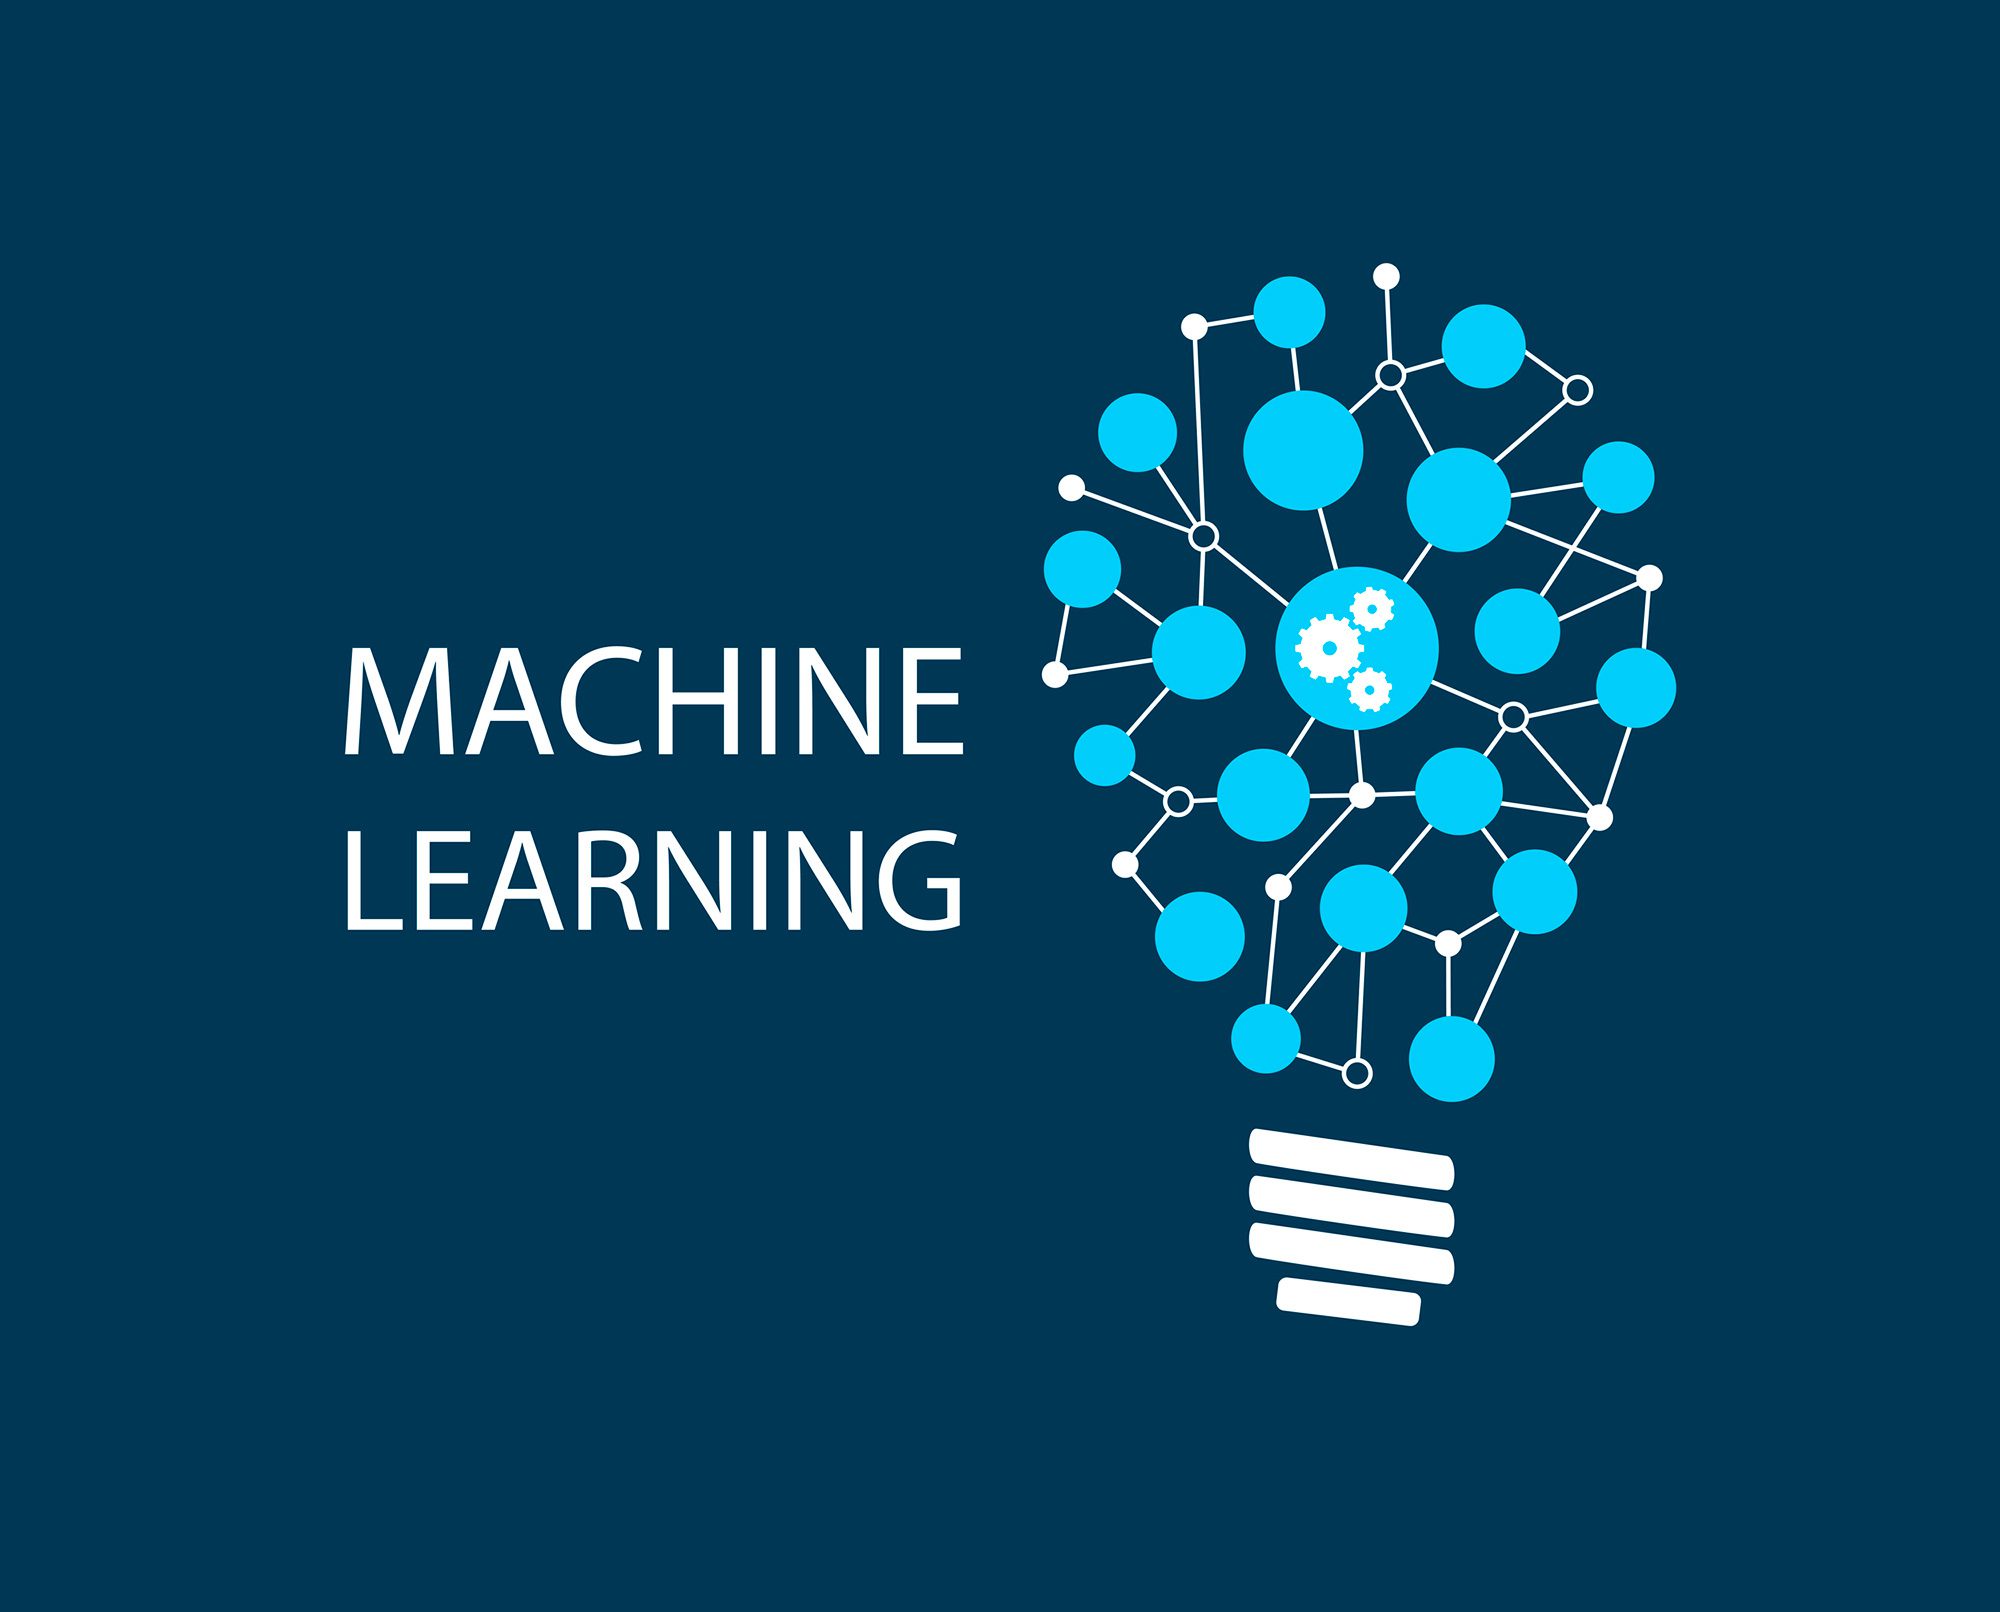 Multi learn. Машинное обучение. Machine Learning course. Machine Learning logo.